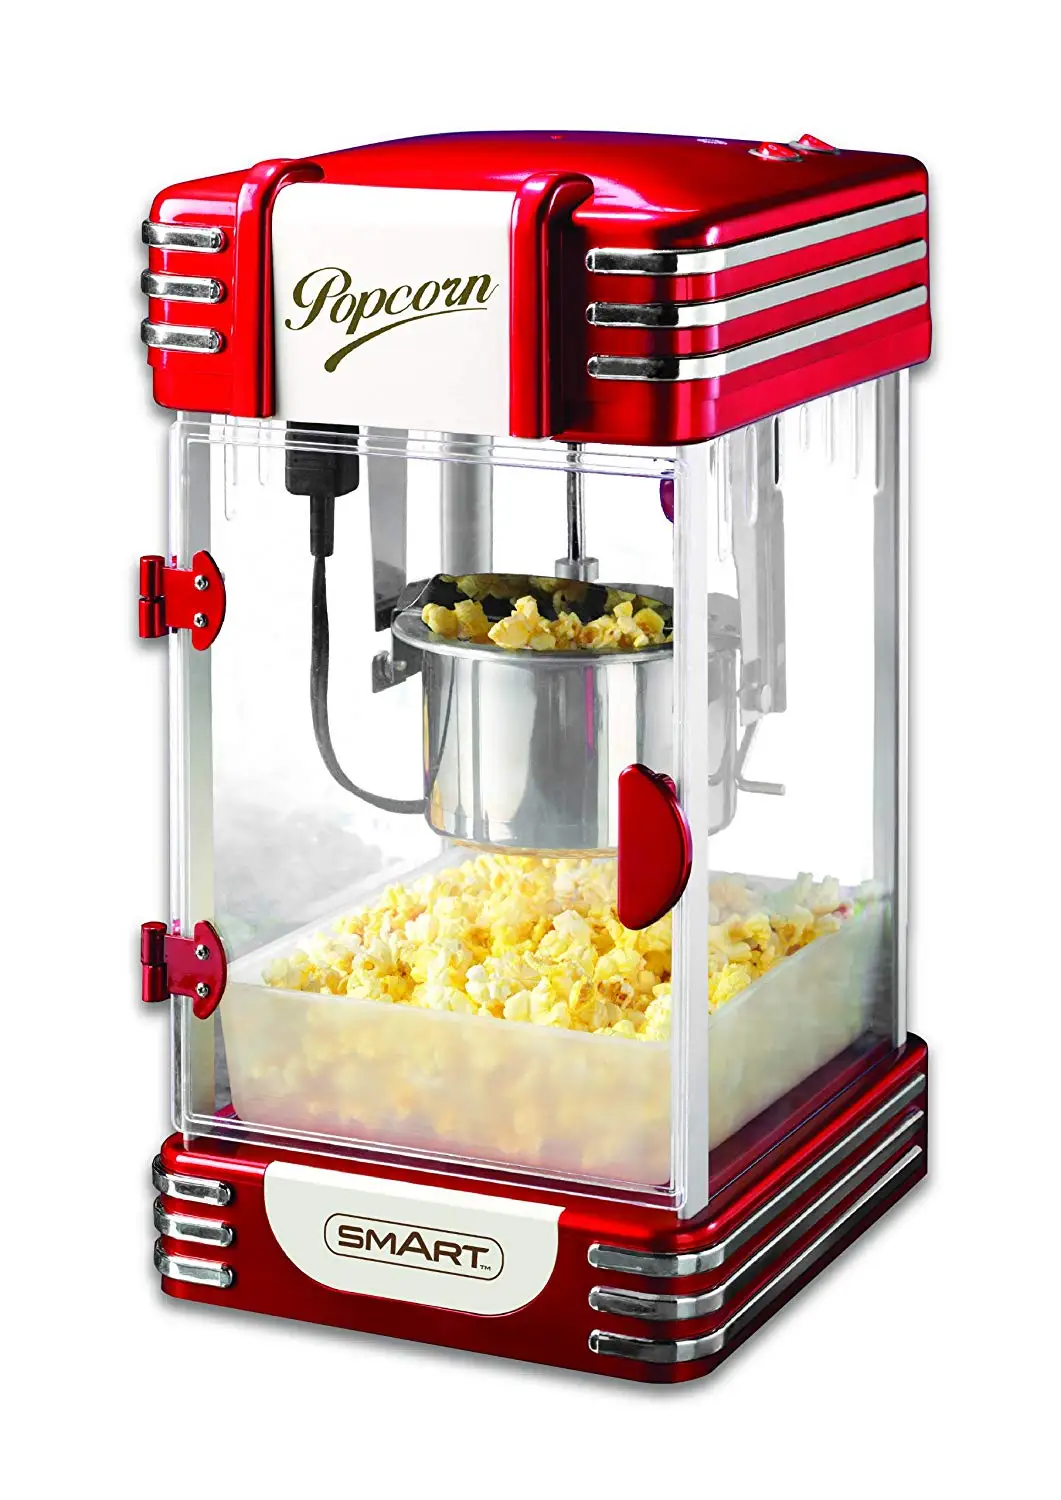 rkp630 popcorn maker